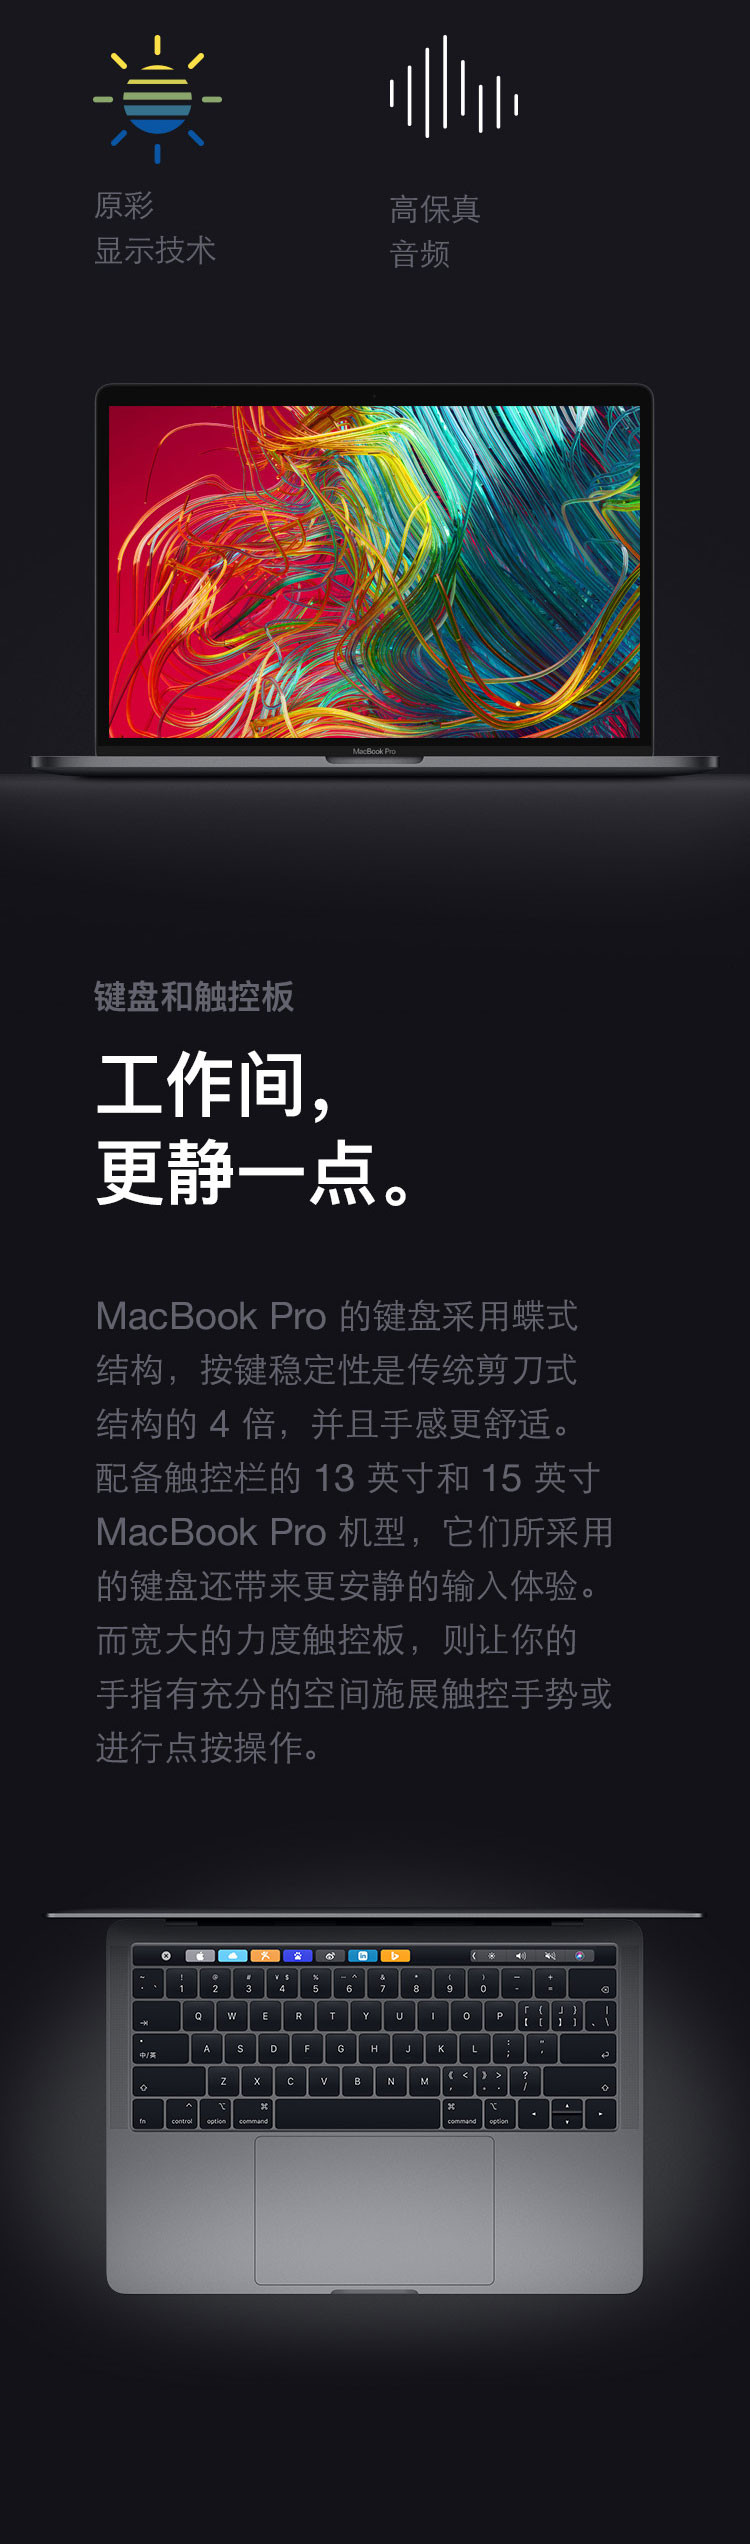 苹果/APPLE 2019款 Macbook Pro 13.3寸笔记本电脑 mv972 mv9A2